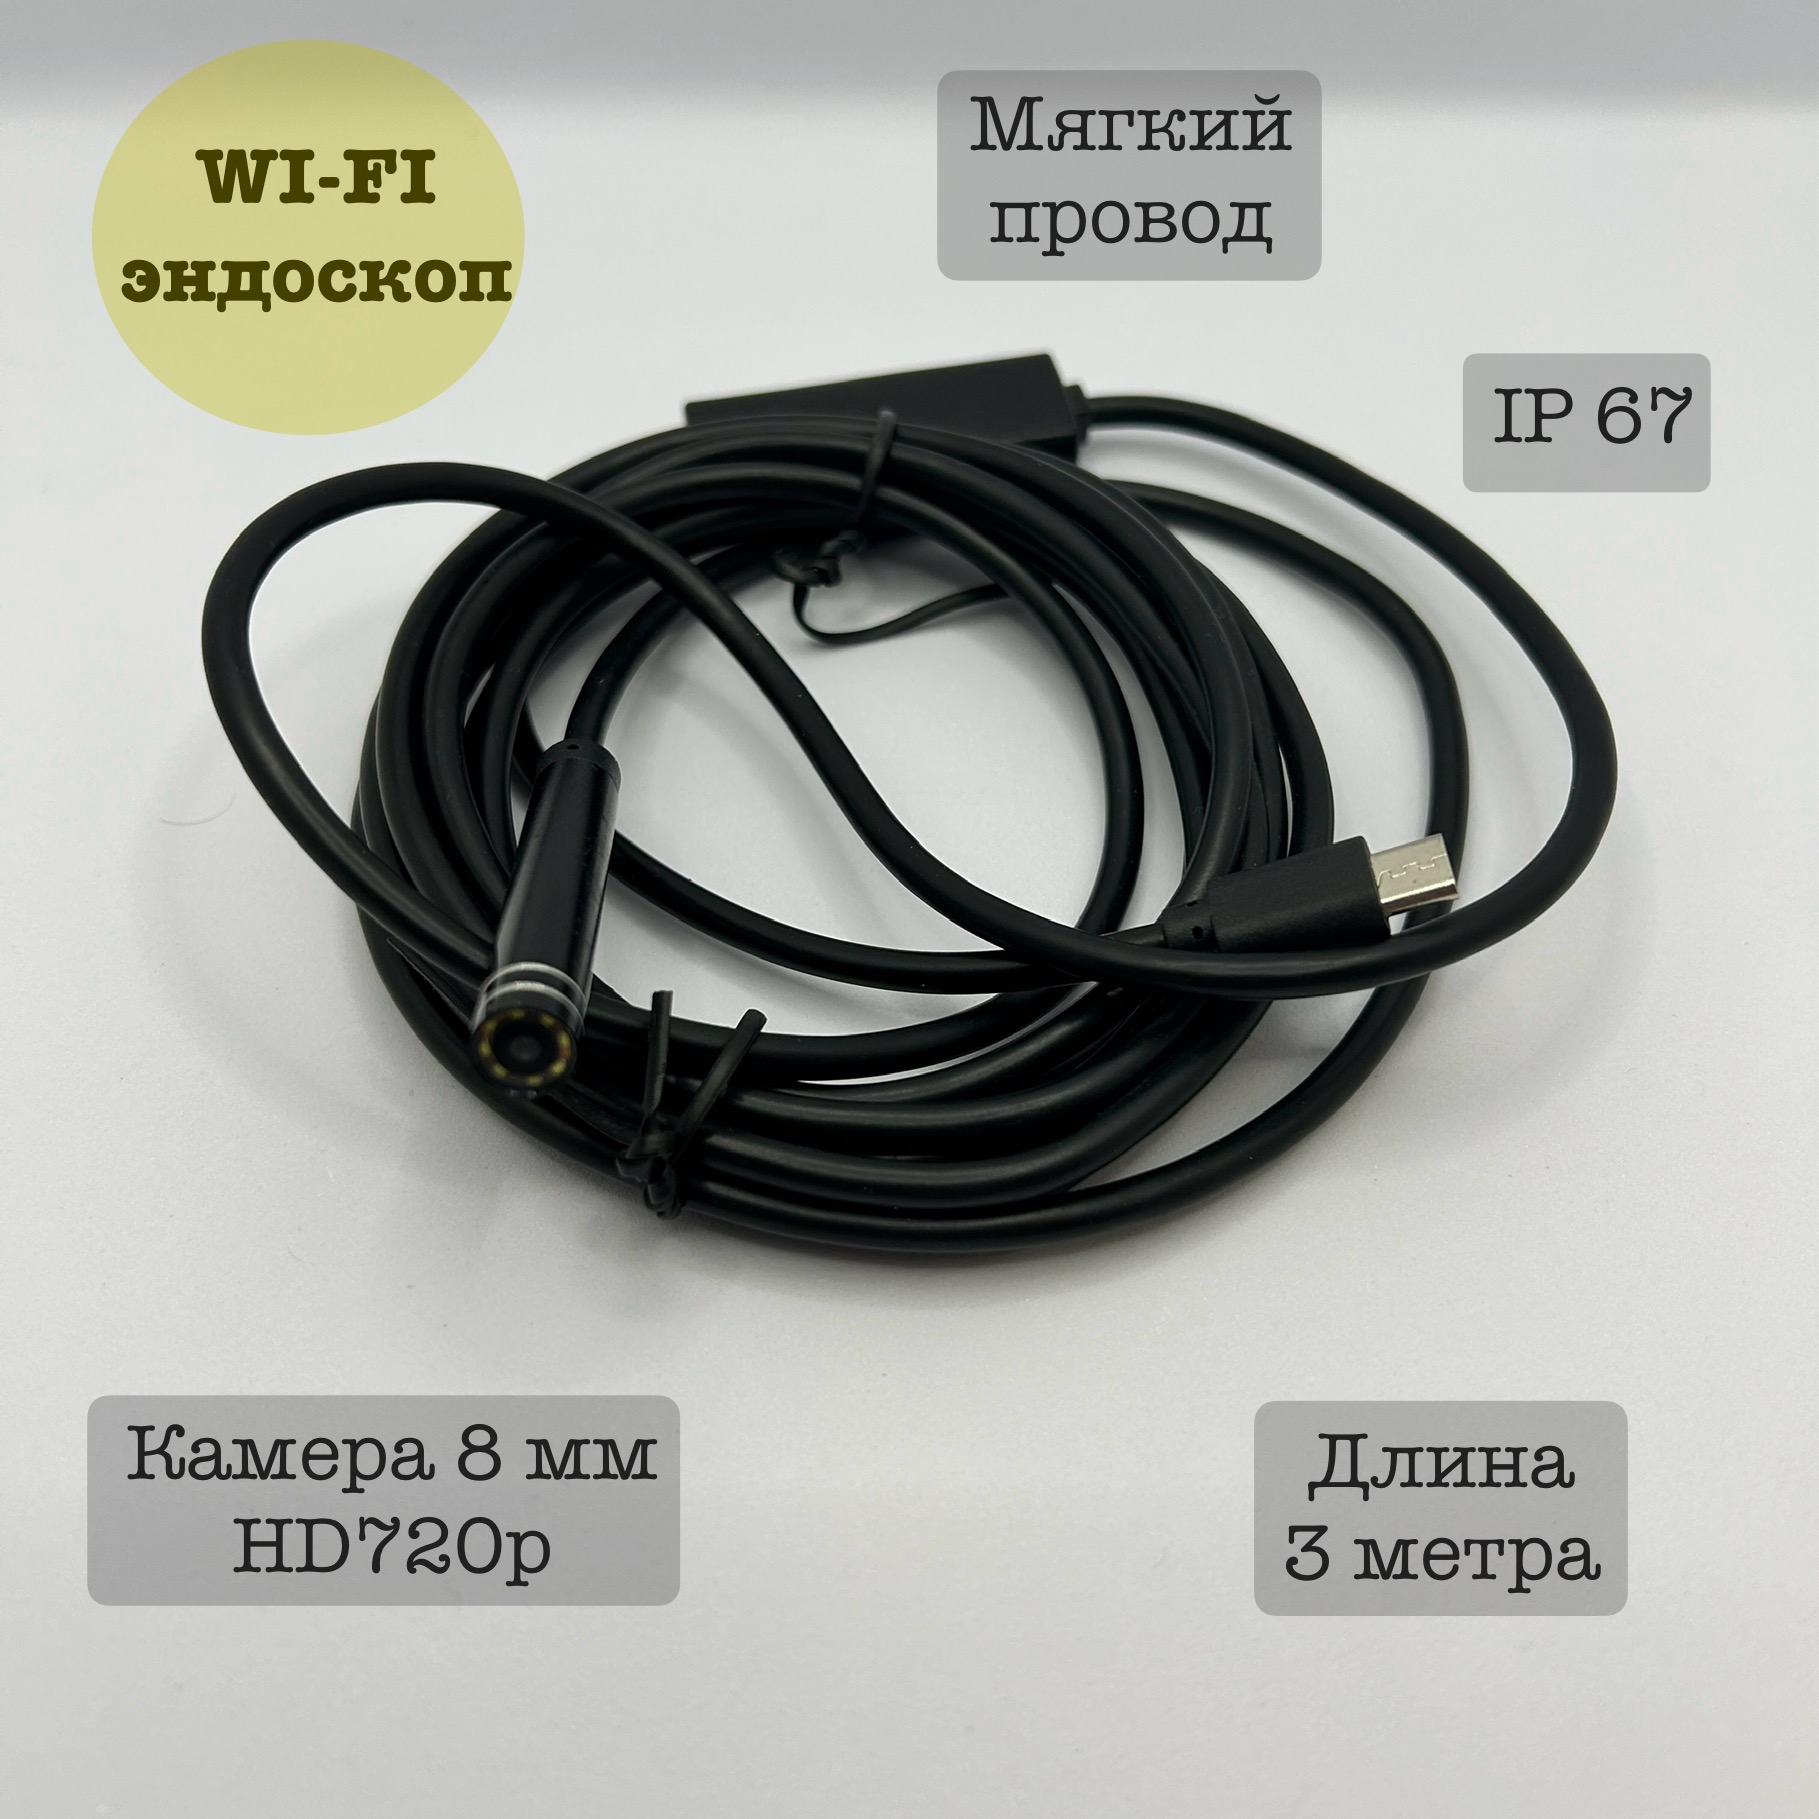 Эндоскоп Wi-fi для автомобиля YPC99-5, 3 метра, мягкий фетр мягкий 1 мм